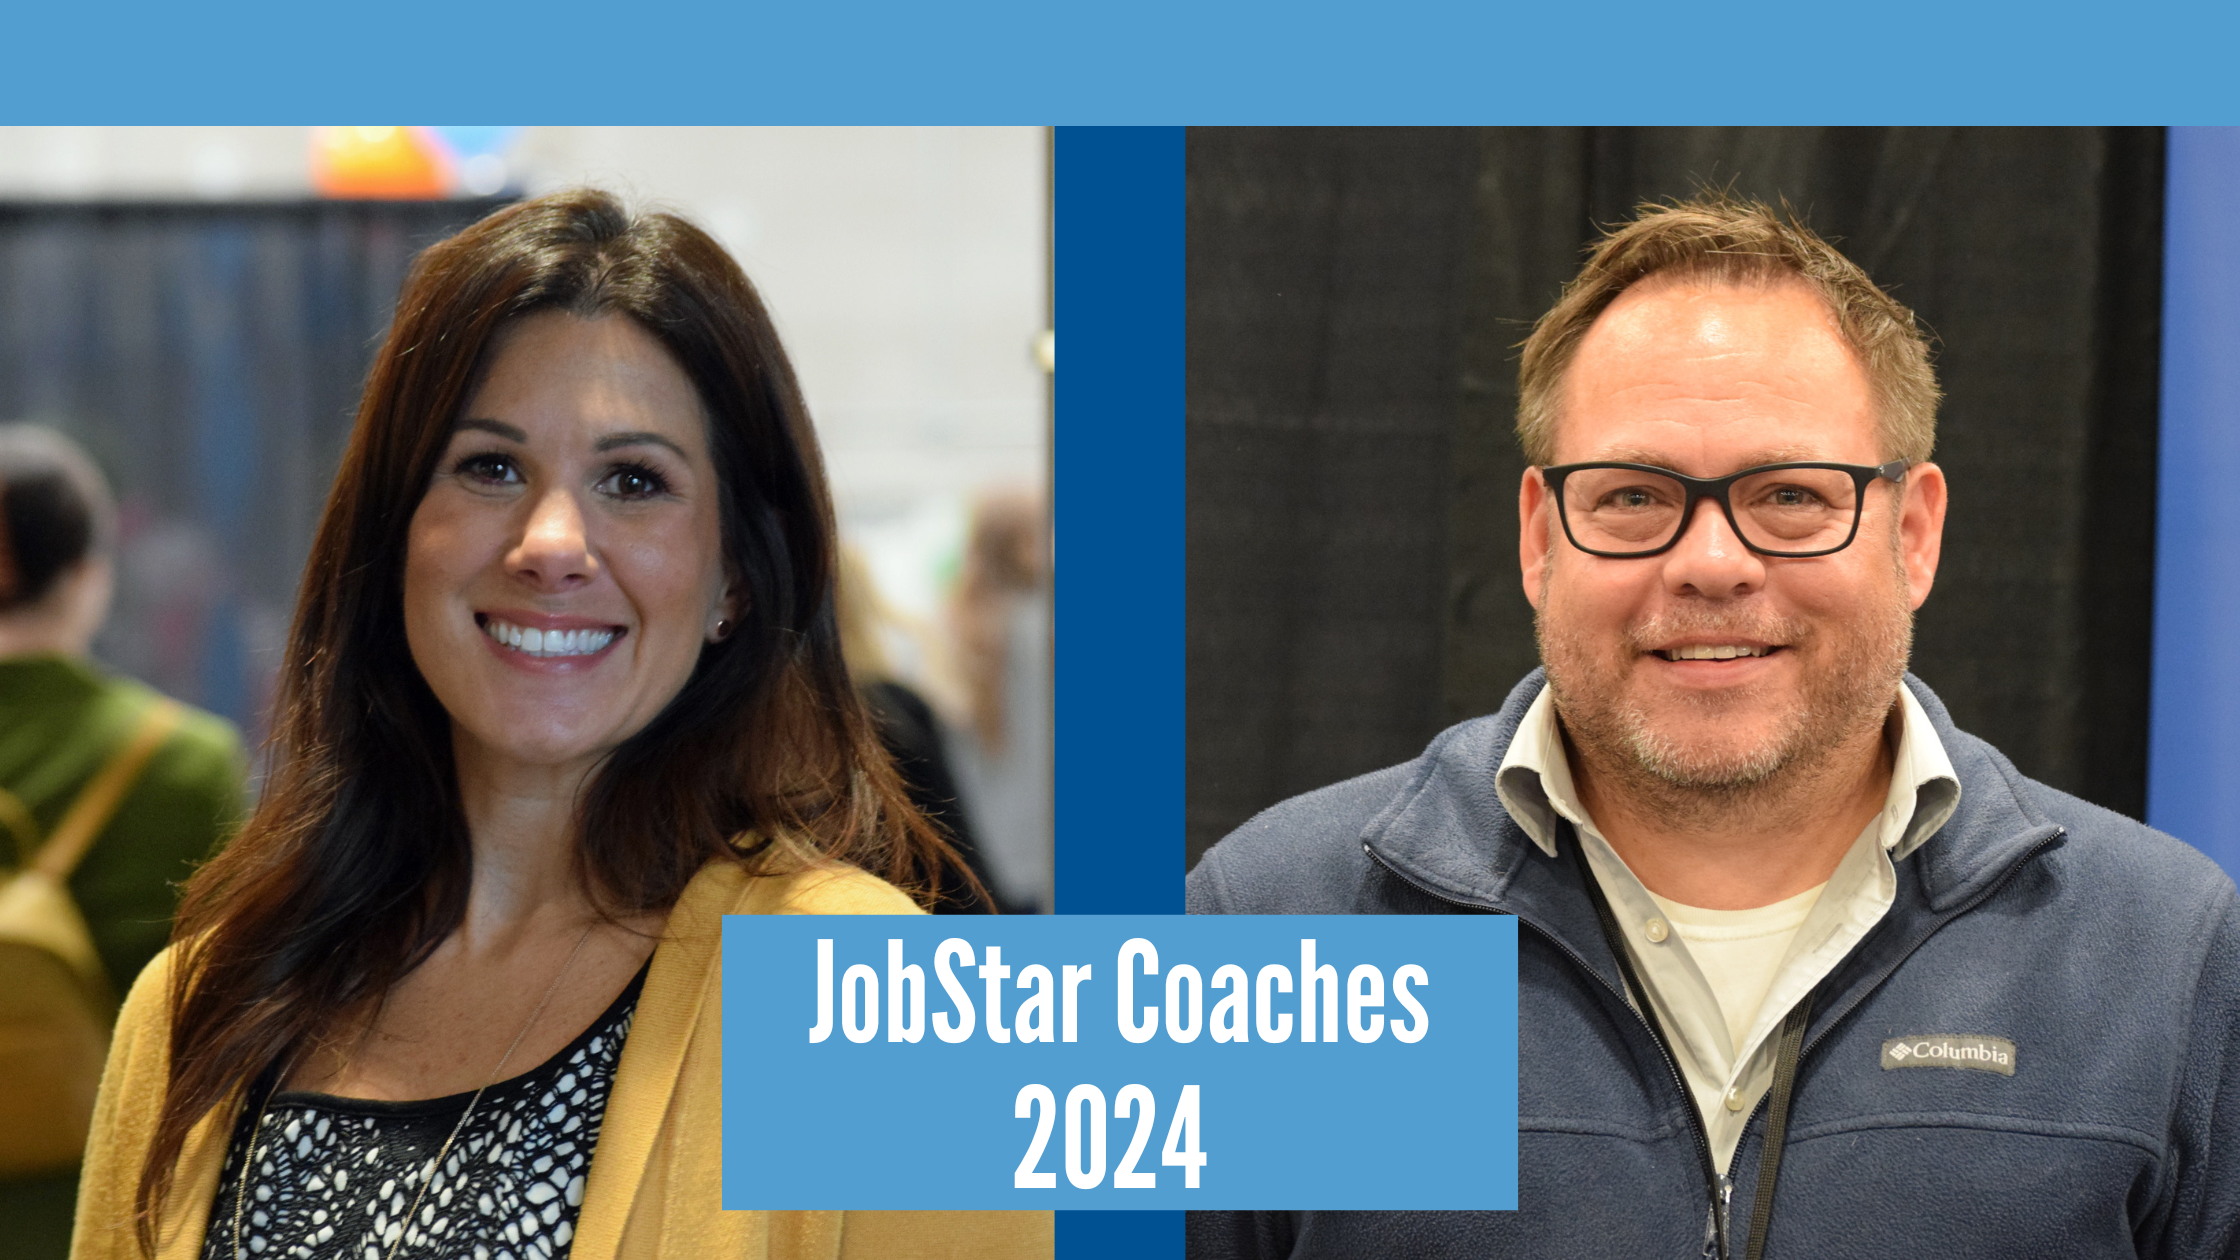 JobStar Coaches 2024